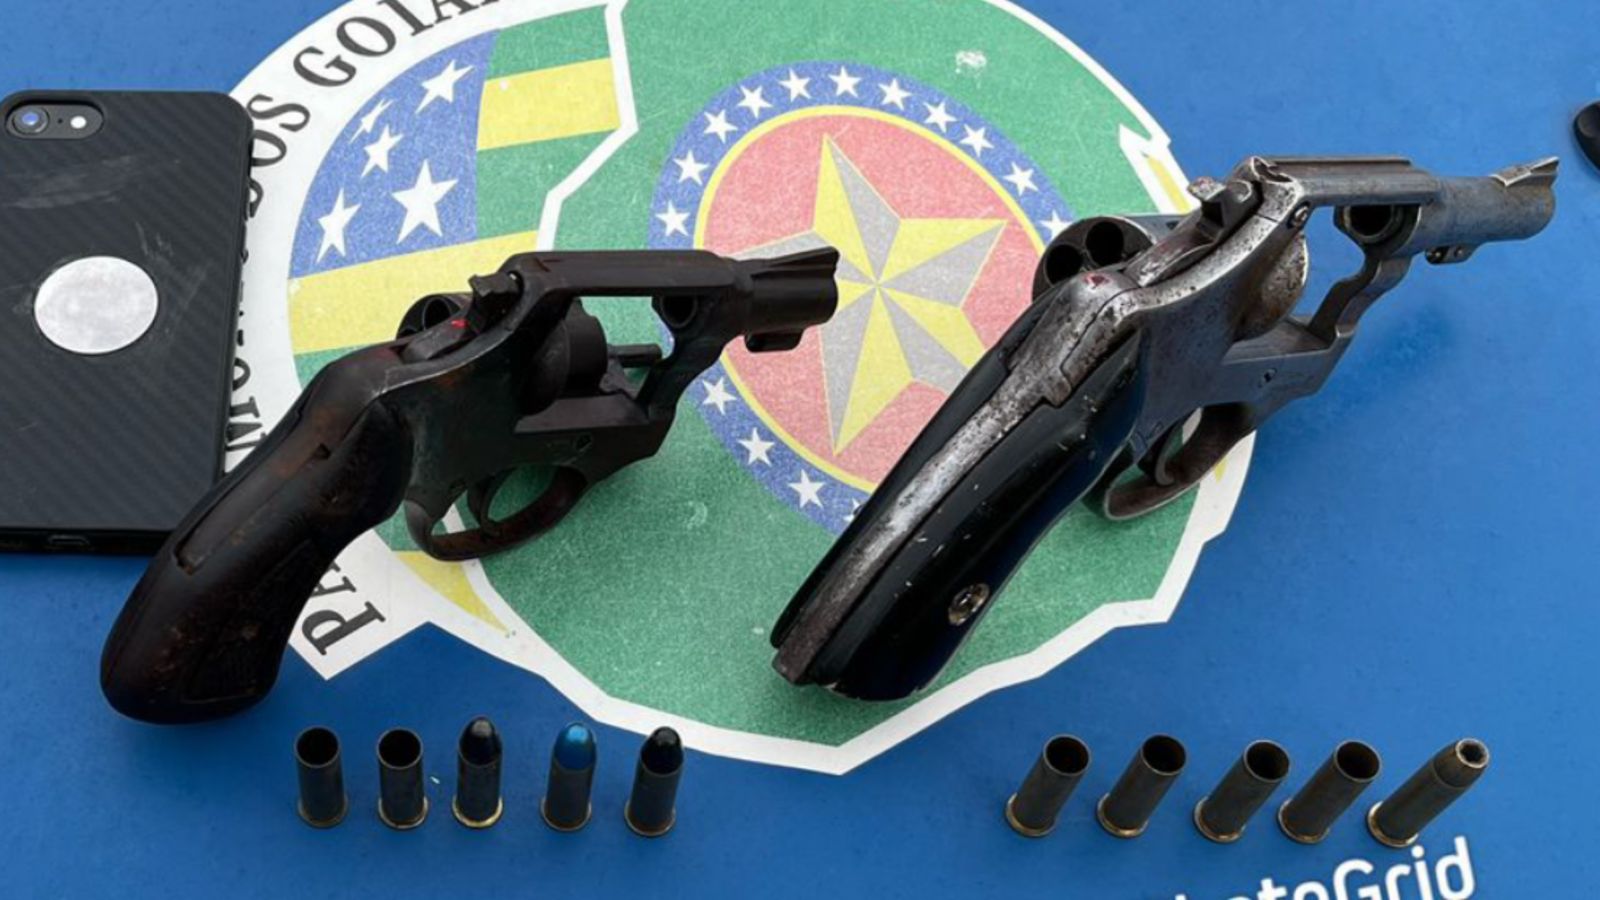 Suspeitos de roubos tráfico morreram após trocarem tiros com policiais militares nesta terça-feira (8), na região Metropolitana de Goiânia. (Foto: divulgação/PM)